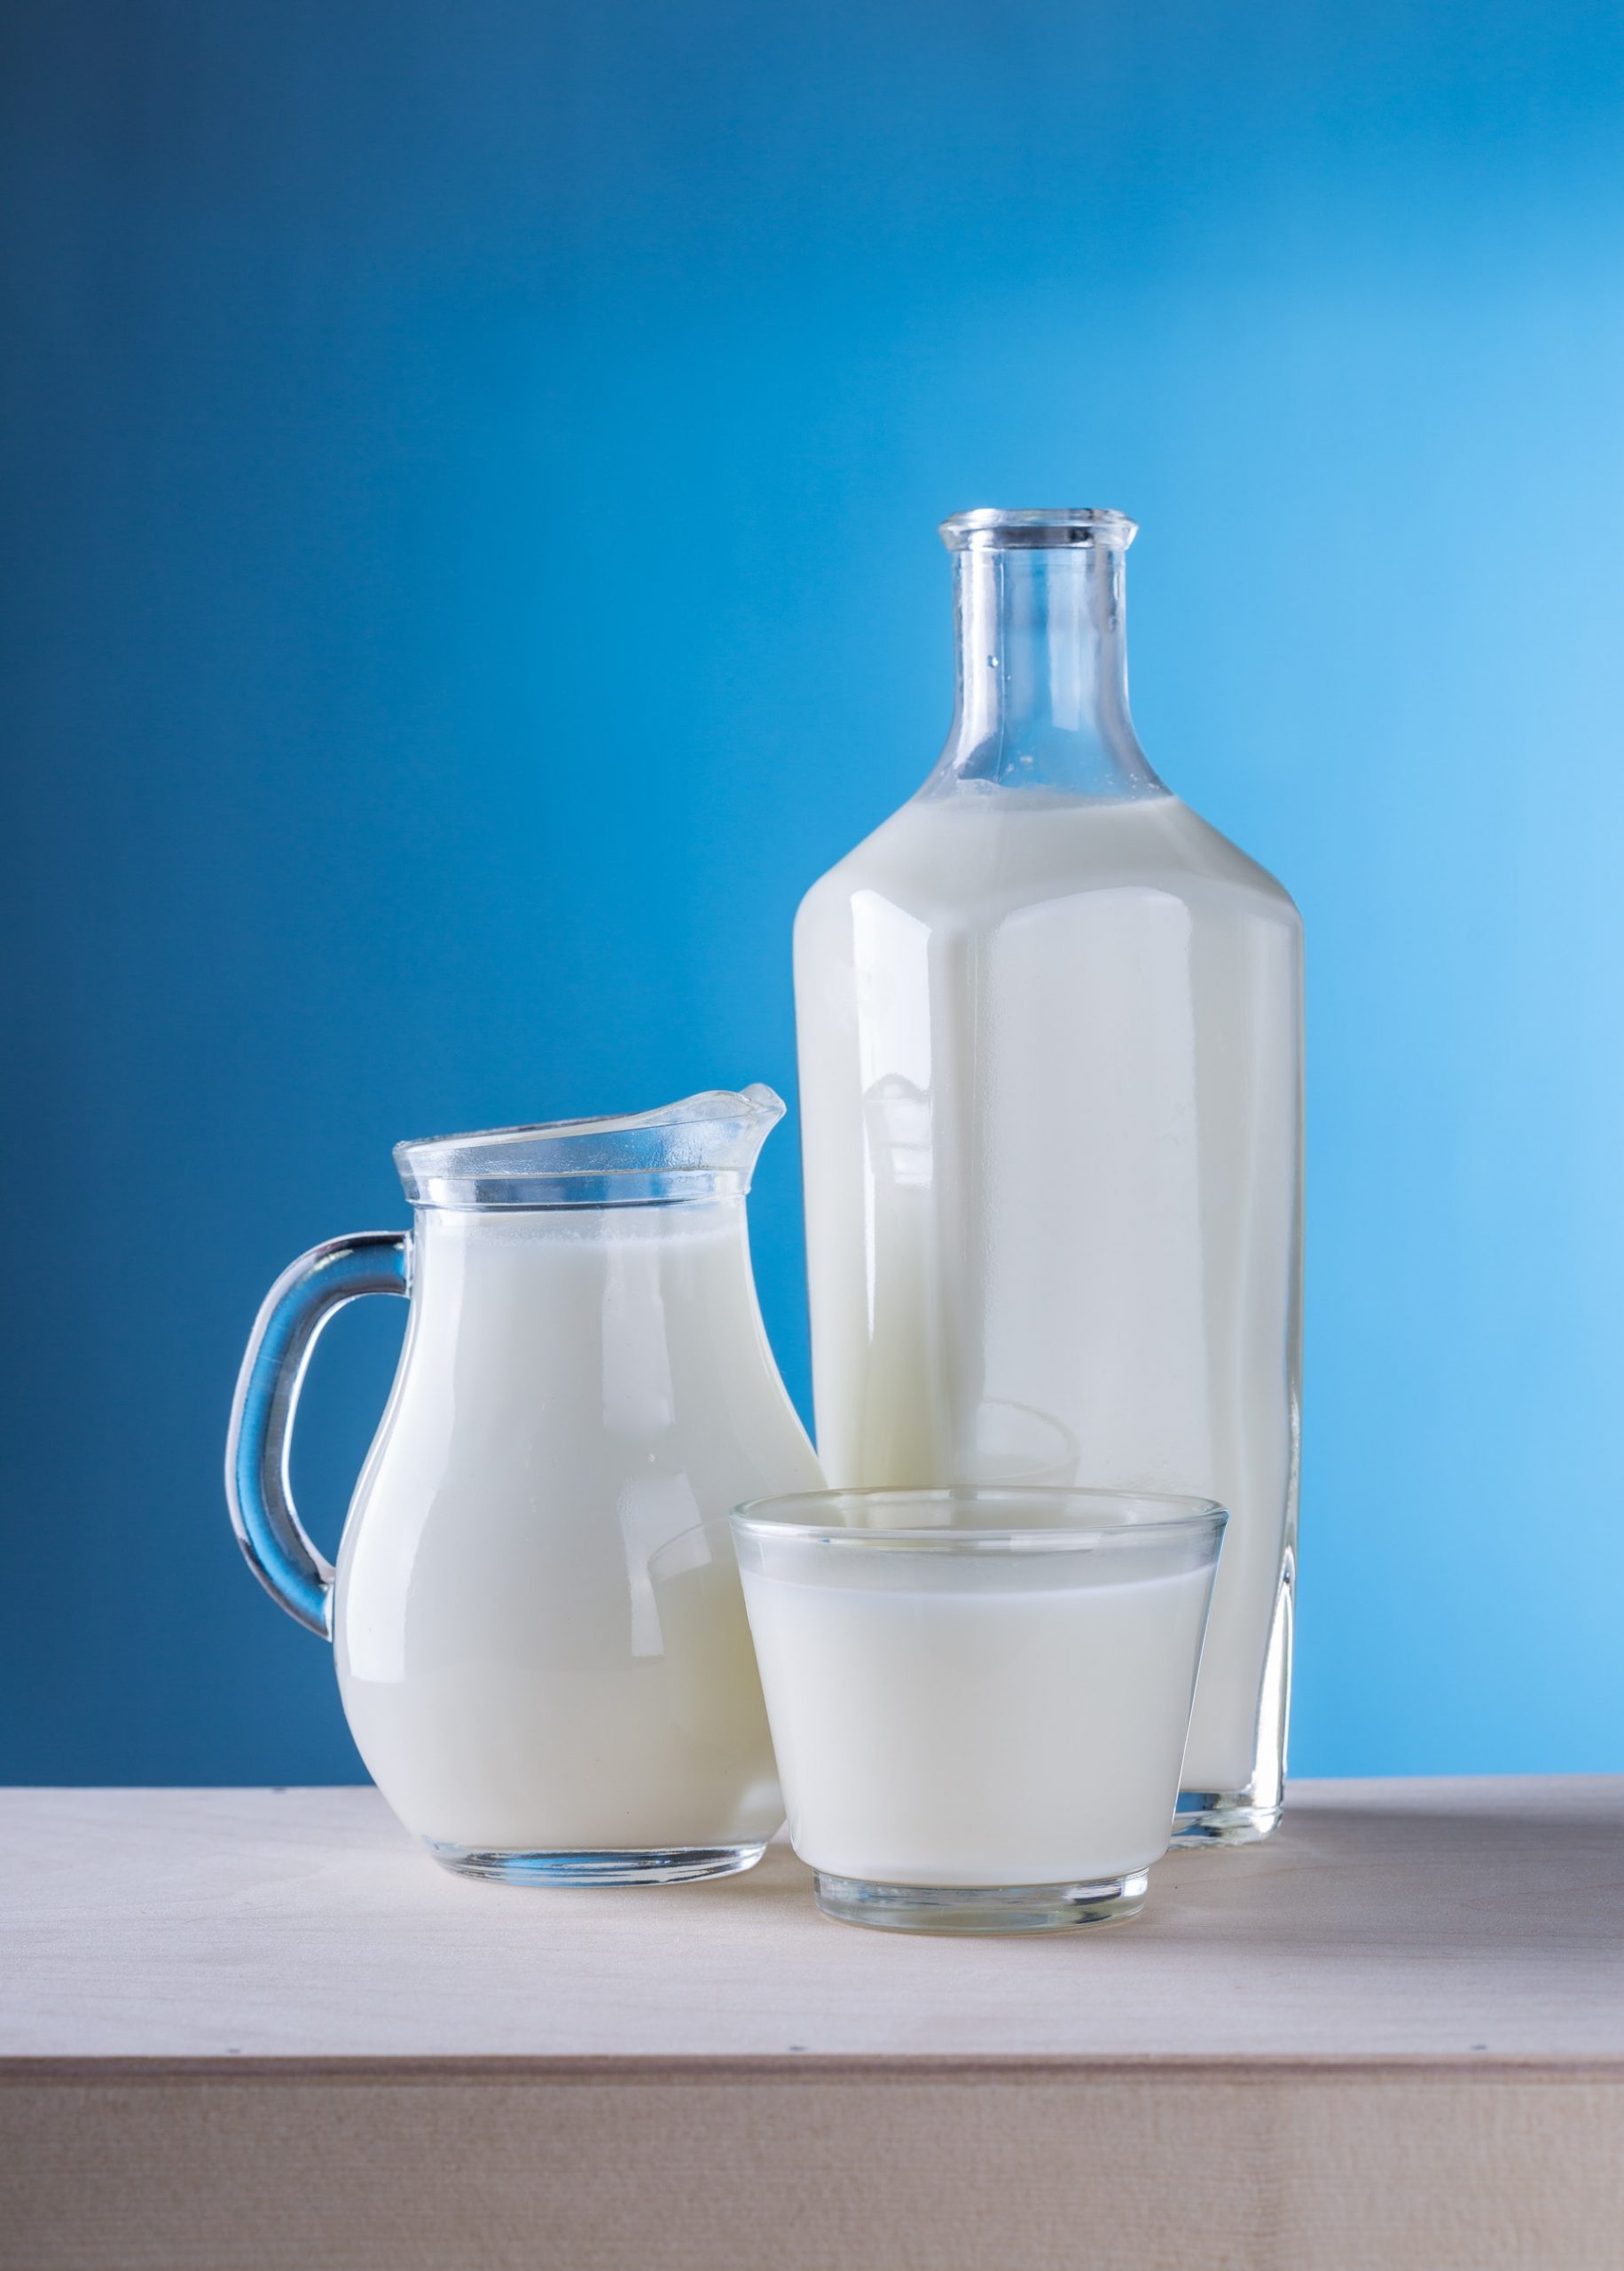 sữa tươi đã được sử dụng như một thực phẩm giúp tăng cân và cơ bắp